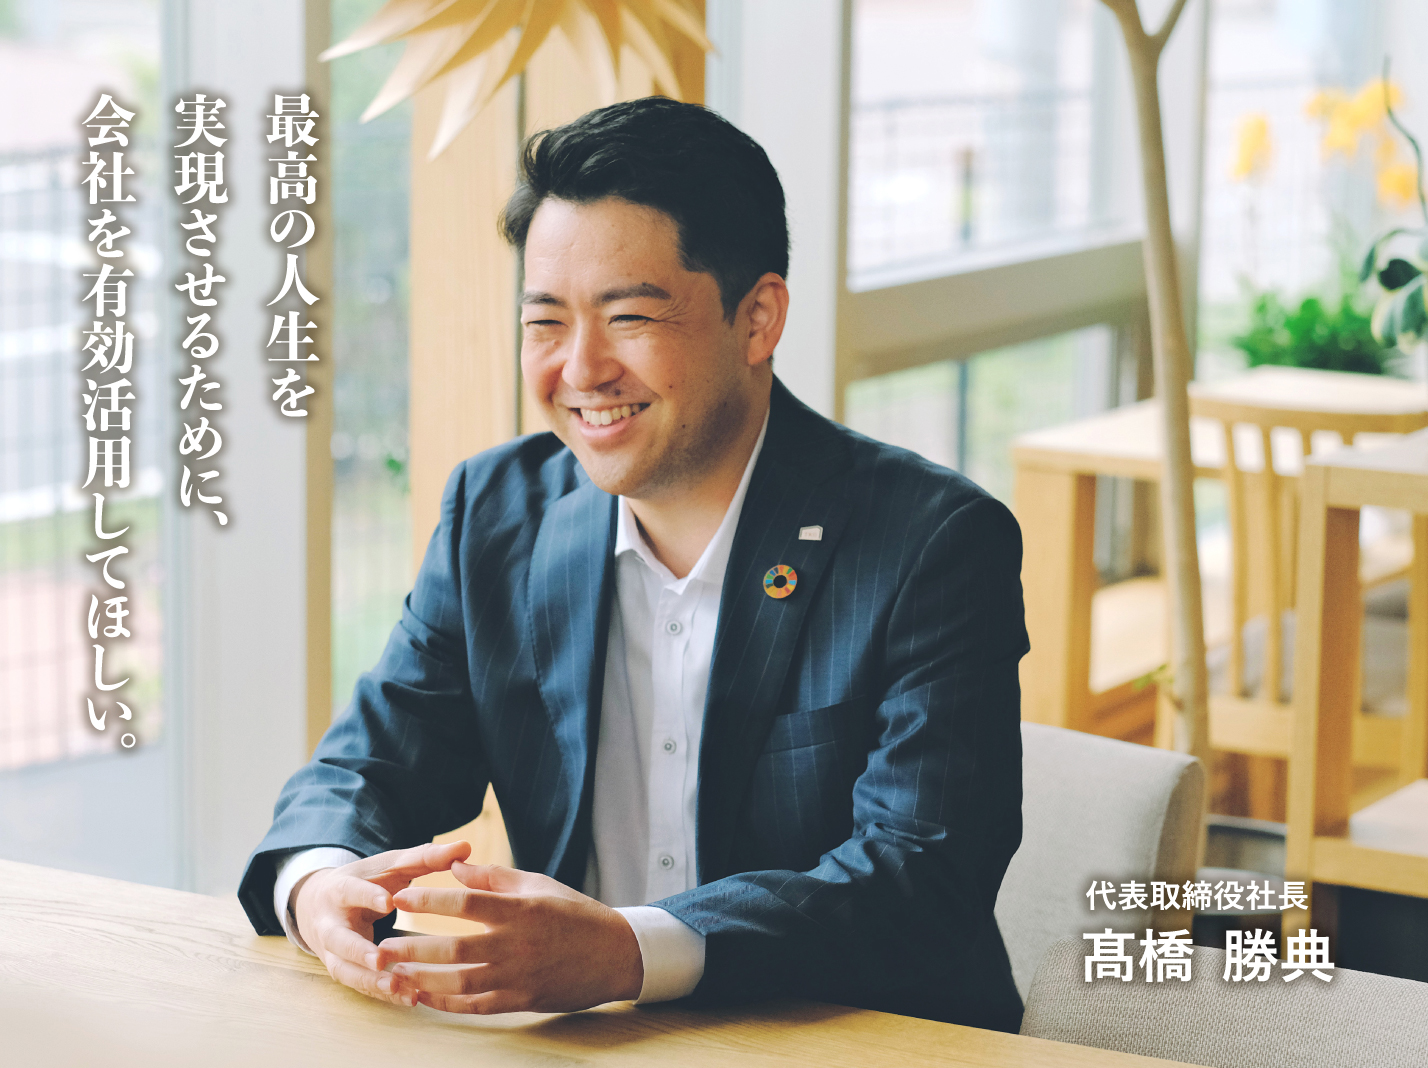 最高の人生を実現させるために、会社を有効活用してほしい。 代表取締役社長 髙橋  勝典